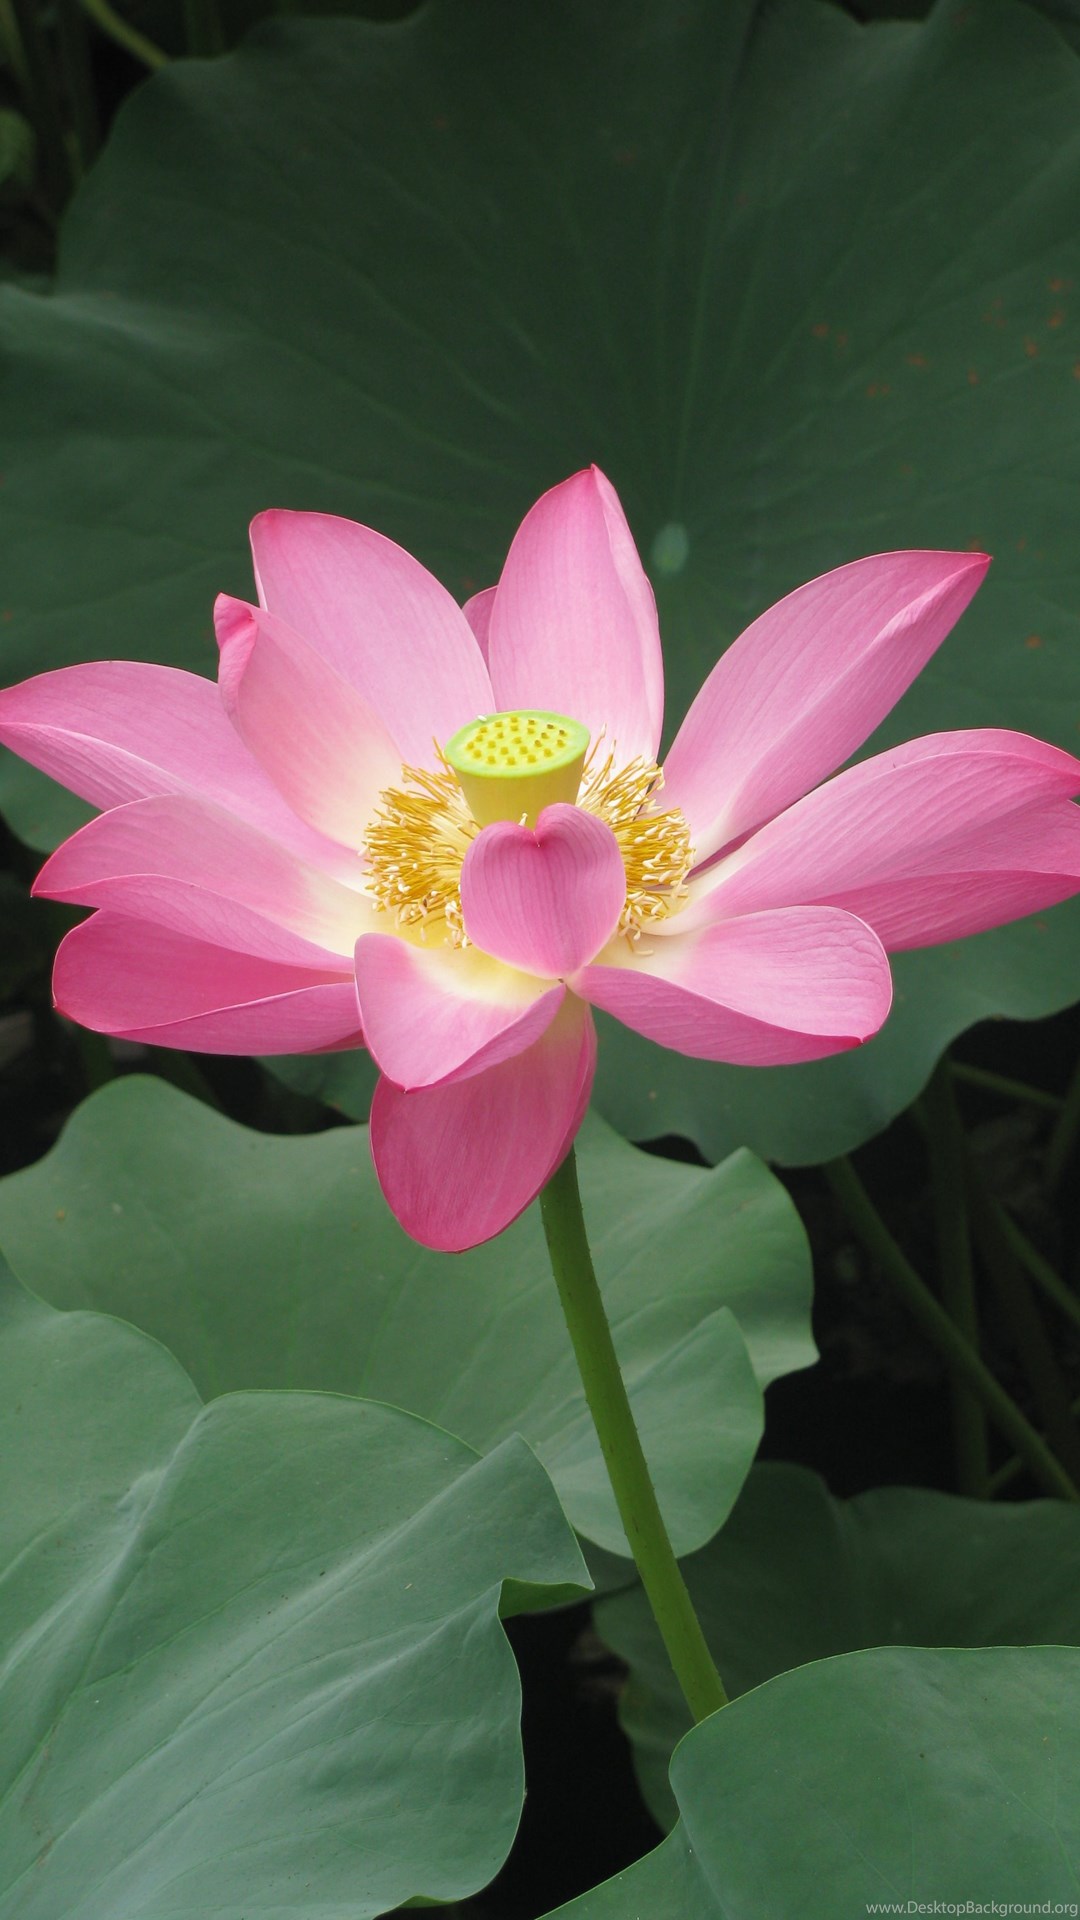 Hoa sen: Hoa sen là biểu tượng của sự tinh tế và cao quý. Đây được coi là một trong những loài hoa đặc biệt nhất tại Việt Nam. Hãy để hình ảnh của hoa sen đưa bạn vào một không gian thư giãn và tìm hiểu thêm về vẻ đẹp của hoa sen.